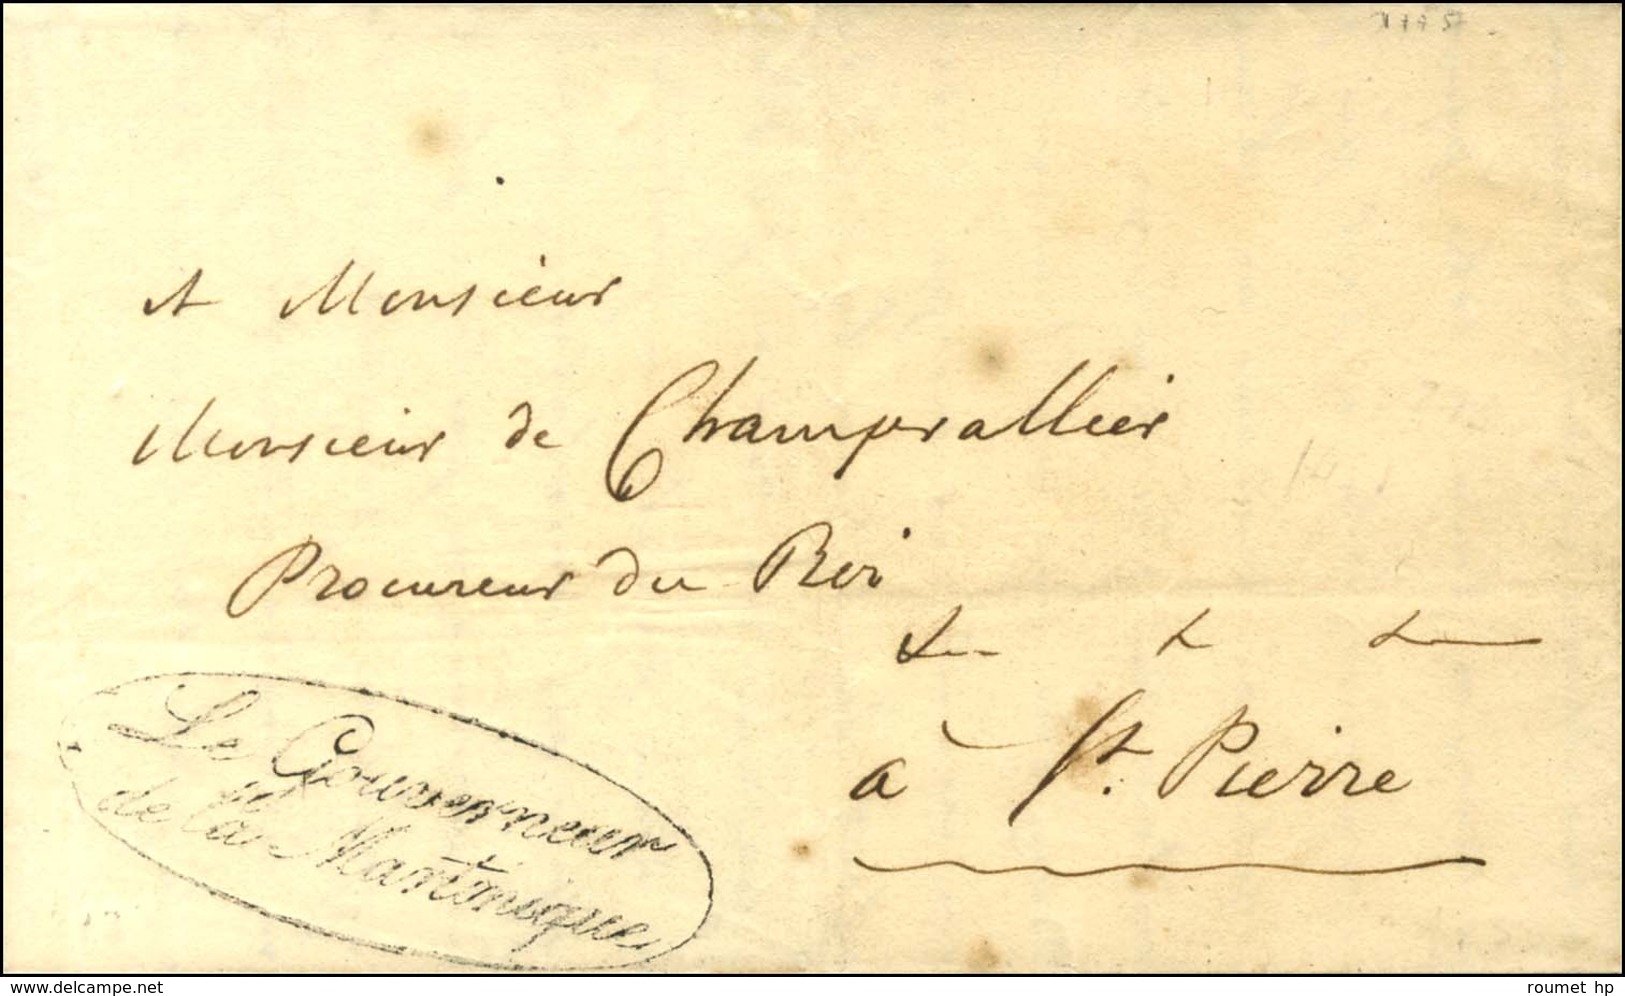 Lettre Avec Texte Daté De Fort Royal Le 22 Janvier 1828 Adressée En Franchise à St Pierre. Au Recto, Franchise LE GOUVER - Maritieme Post